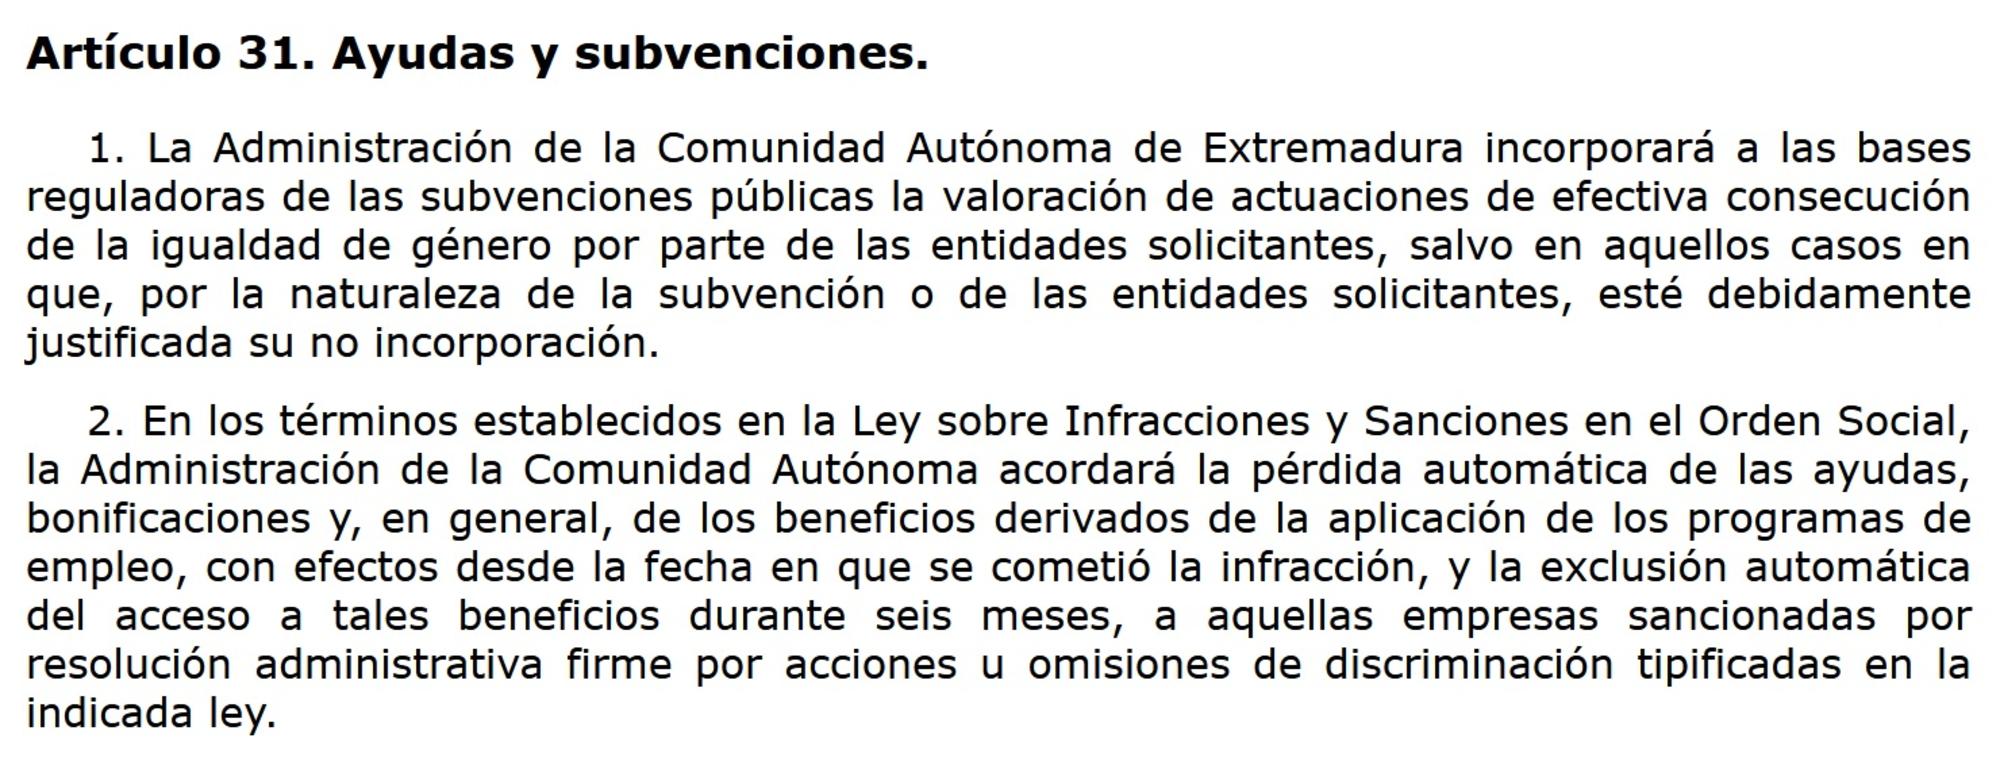 Artículo 31 Ley 8/2011 Igualdad Extremadura